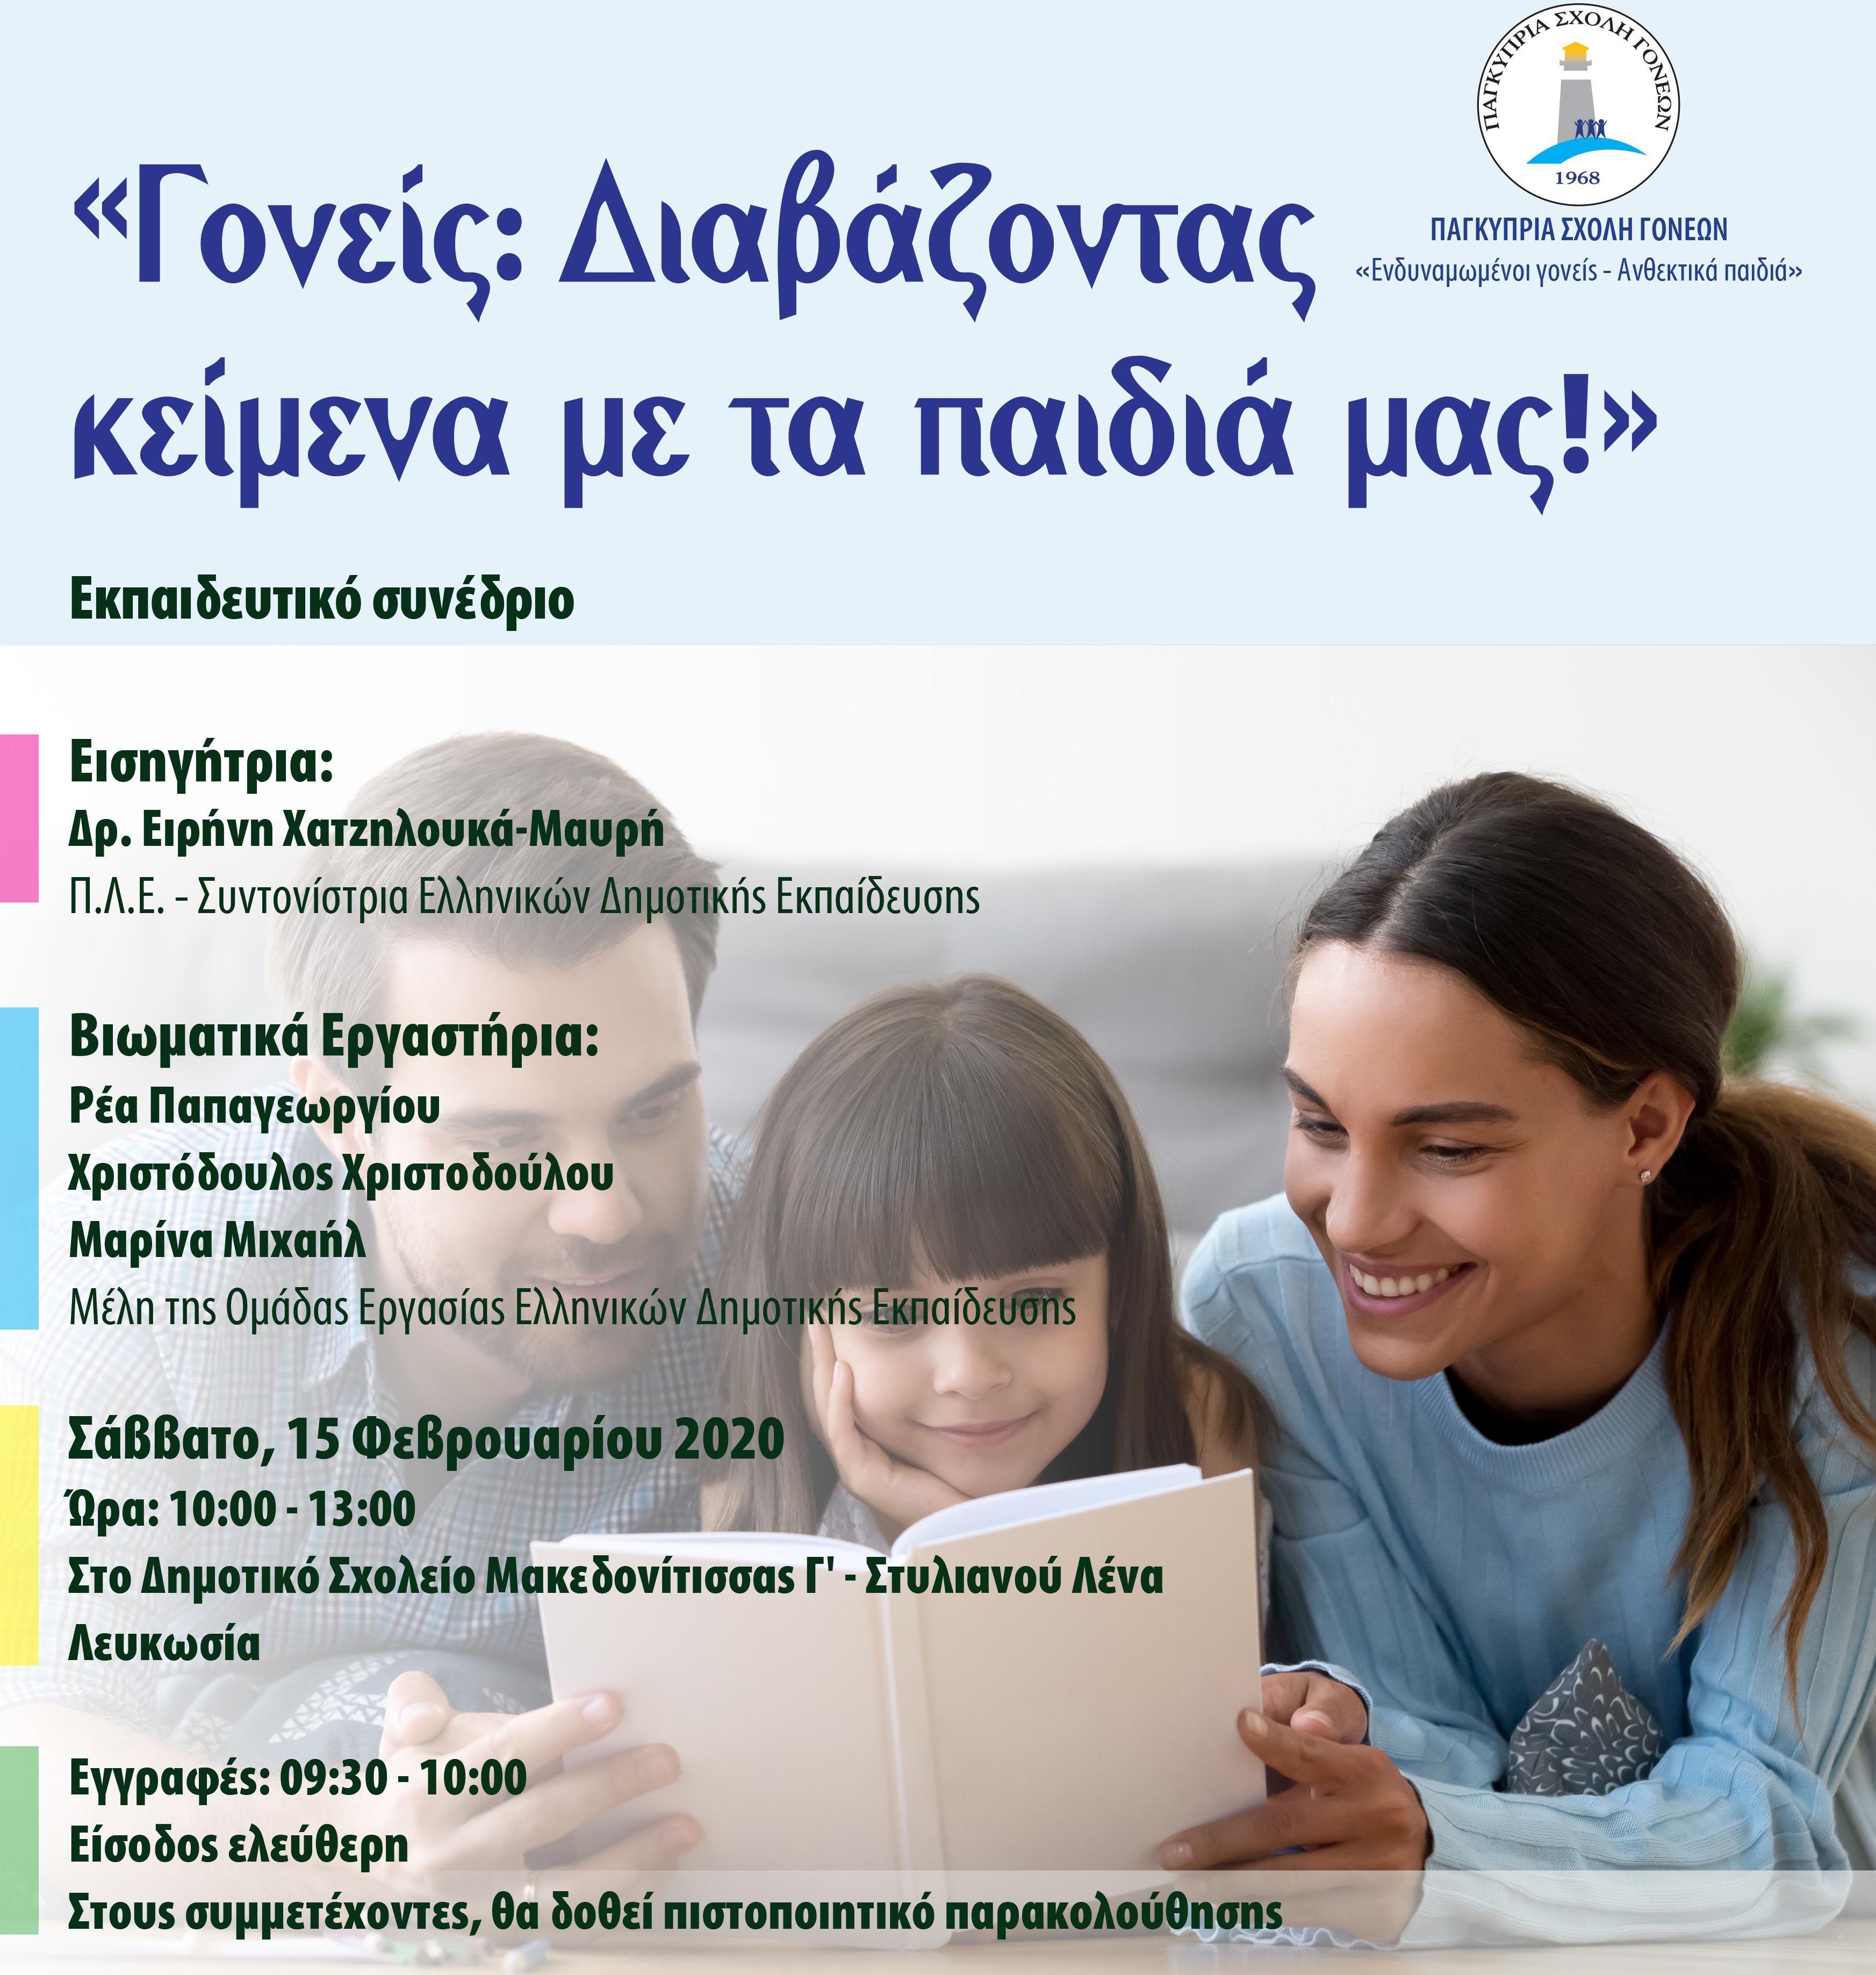 Η Παγκύπρια Σχολή Γονέων διοργανώνει Εκπαιδευτικό Συνέδριο στη Λευκωσία